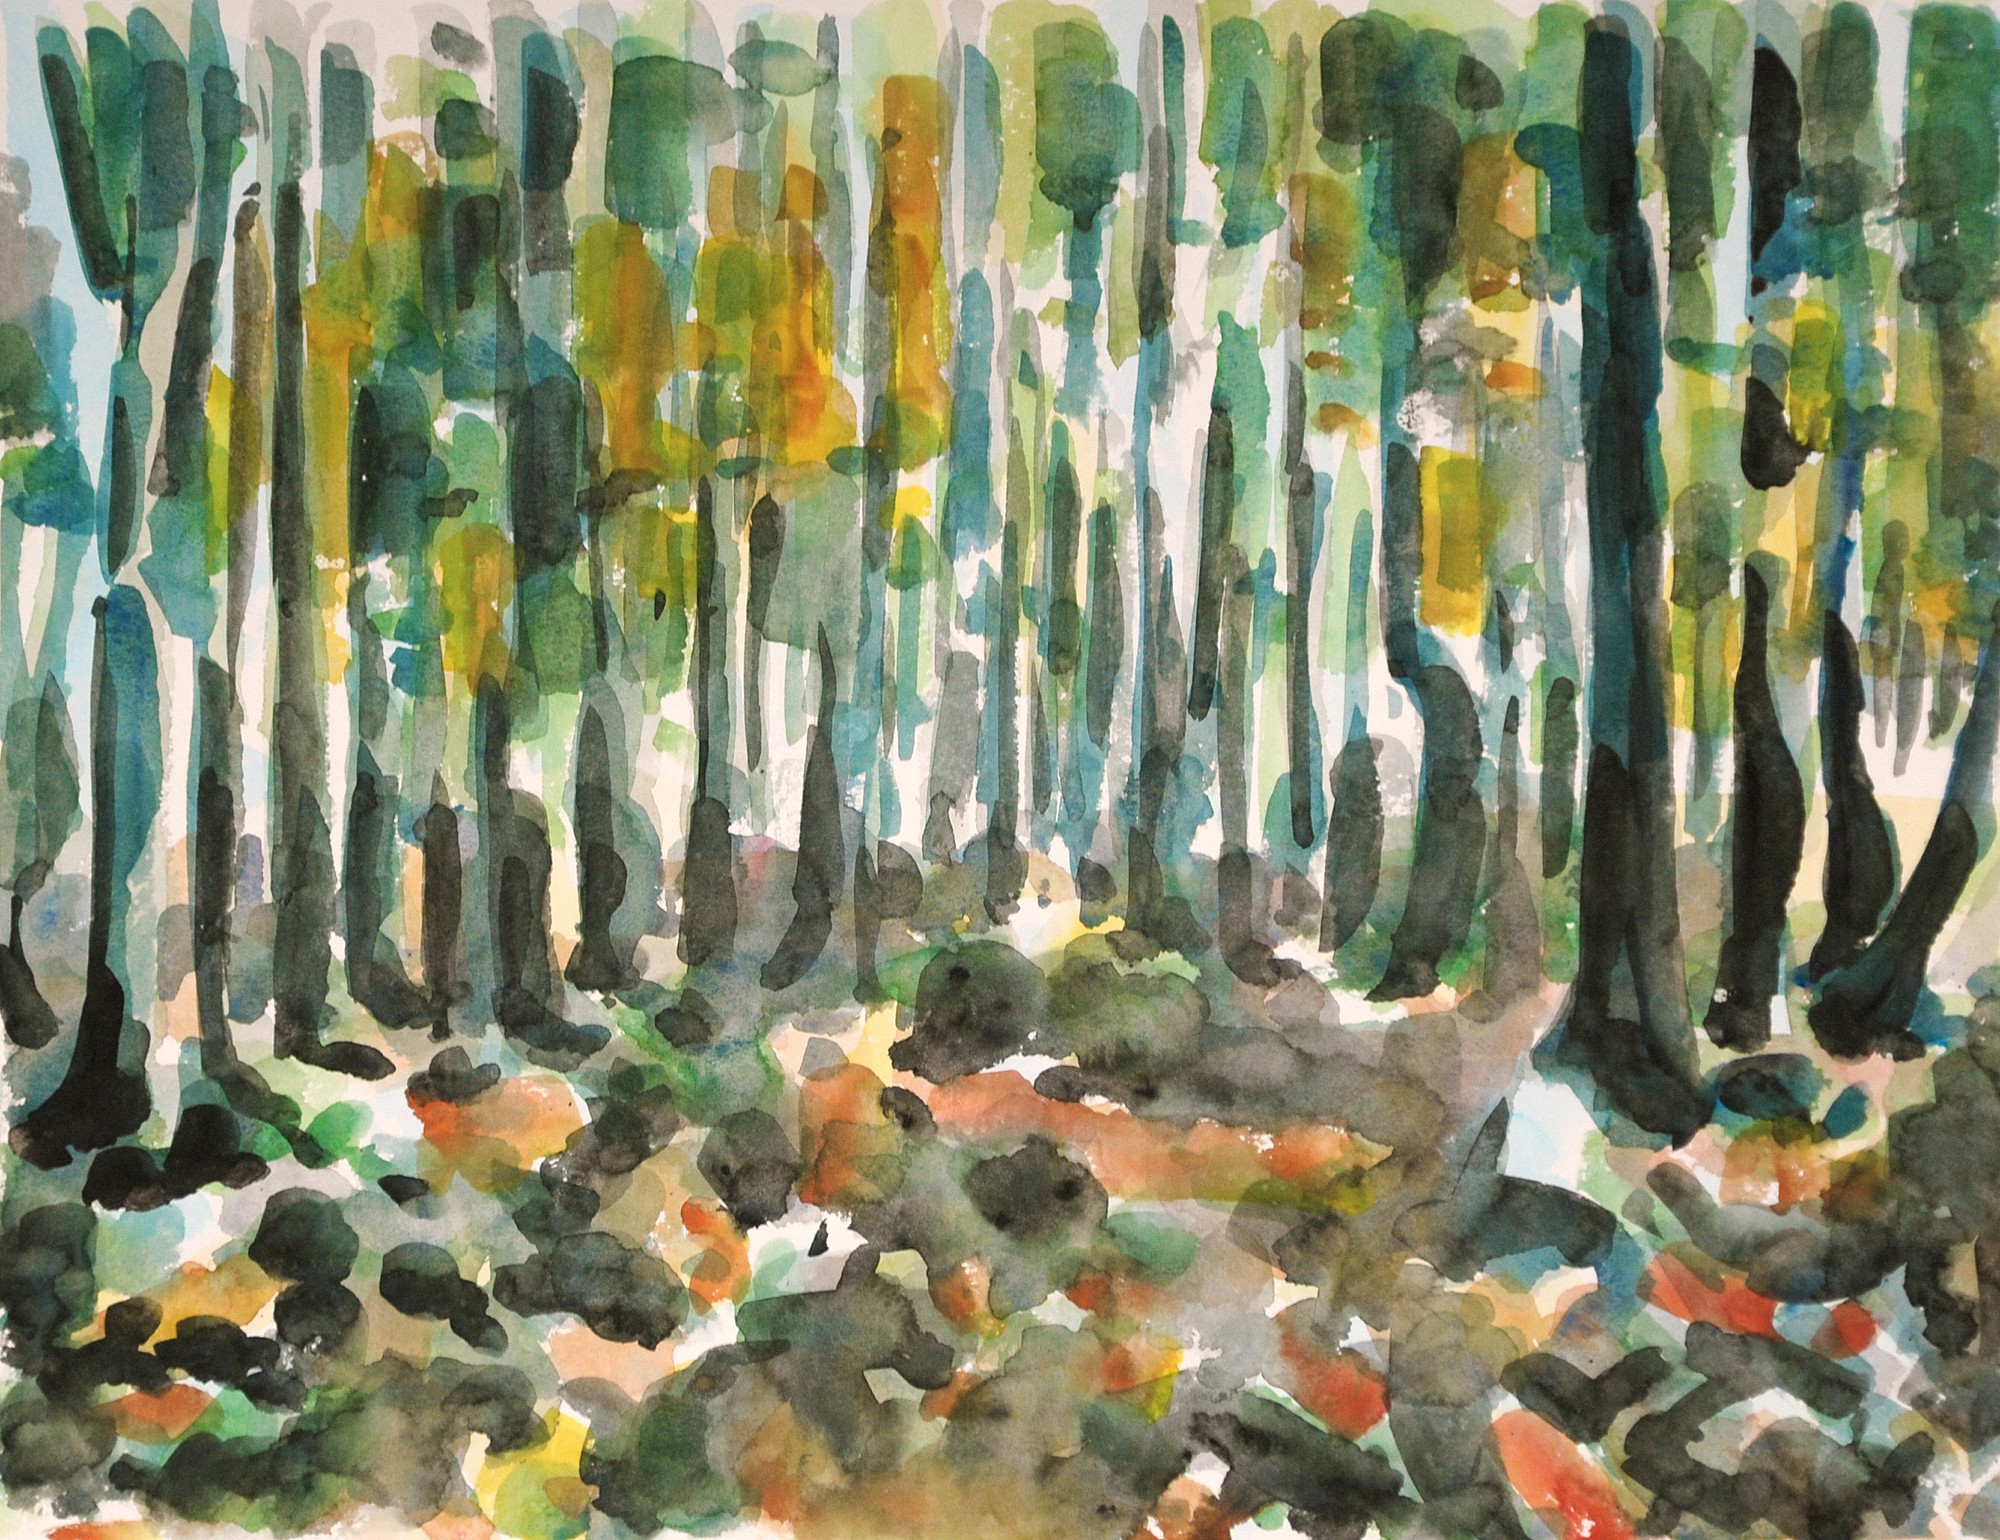 Christoph Leuthold Landschaft, Bilder, Gemälde, Malerei in Acryl und Aquarell: Jura / Obwalden Buchenwald, Prés d'Orvin, 2014
Aquarell auf Papier
64 x 50 cm